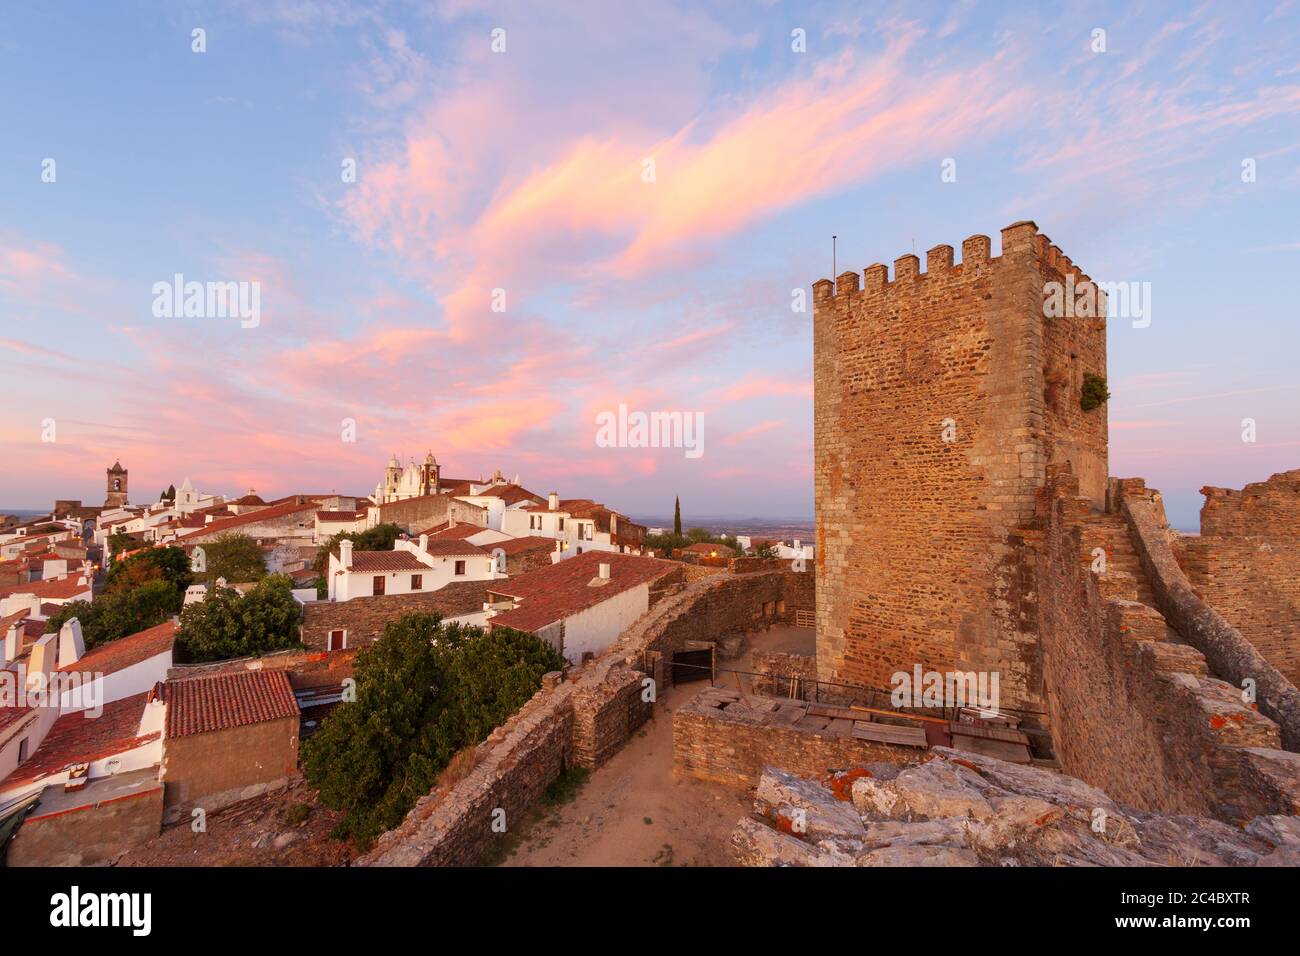 Monsaraz ist eine Touristenattraktion im Alentejo, Portugal. Schönes mittelalterliches Dorf. Von den Mauern seiner Burg aus können wir eine erstaunliche Pfanne betrachten Stockfoto